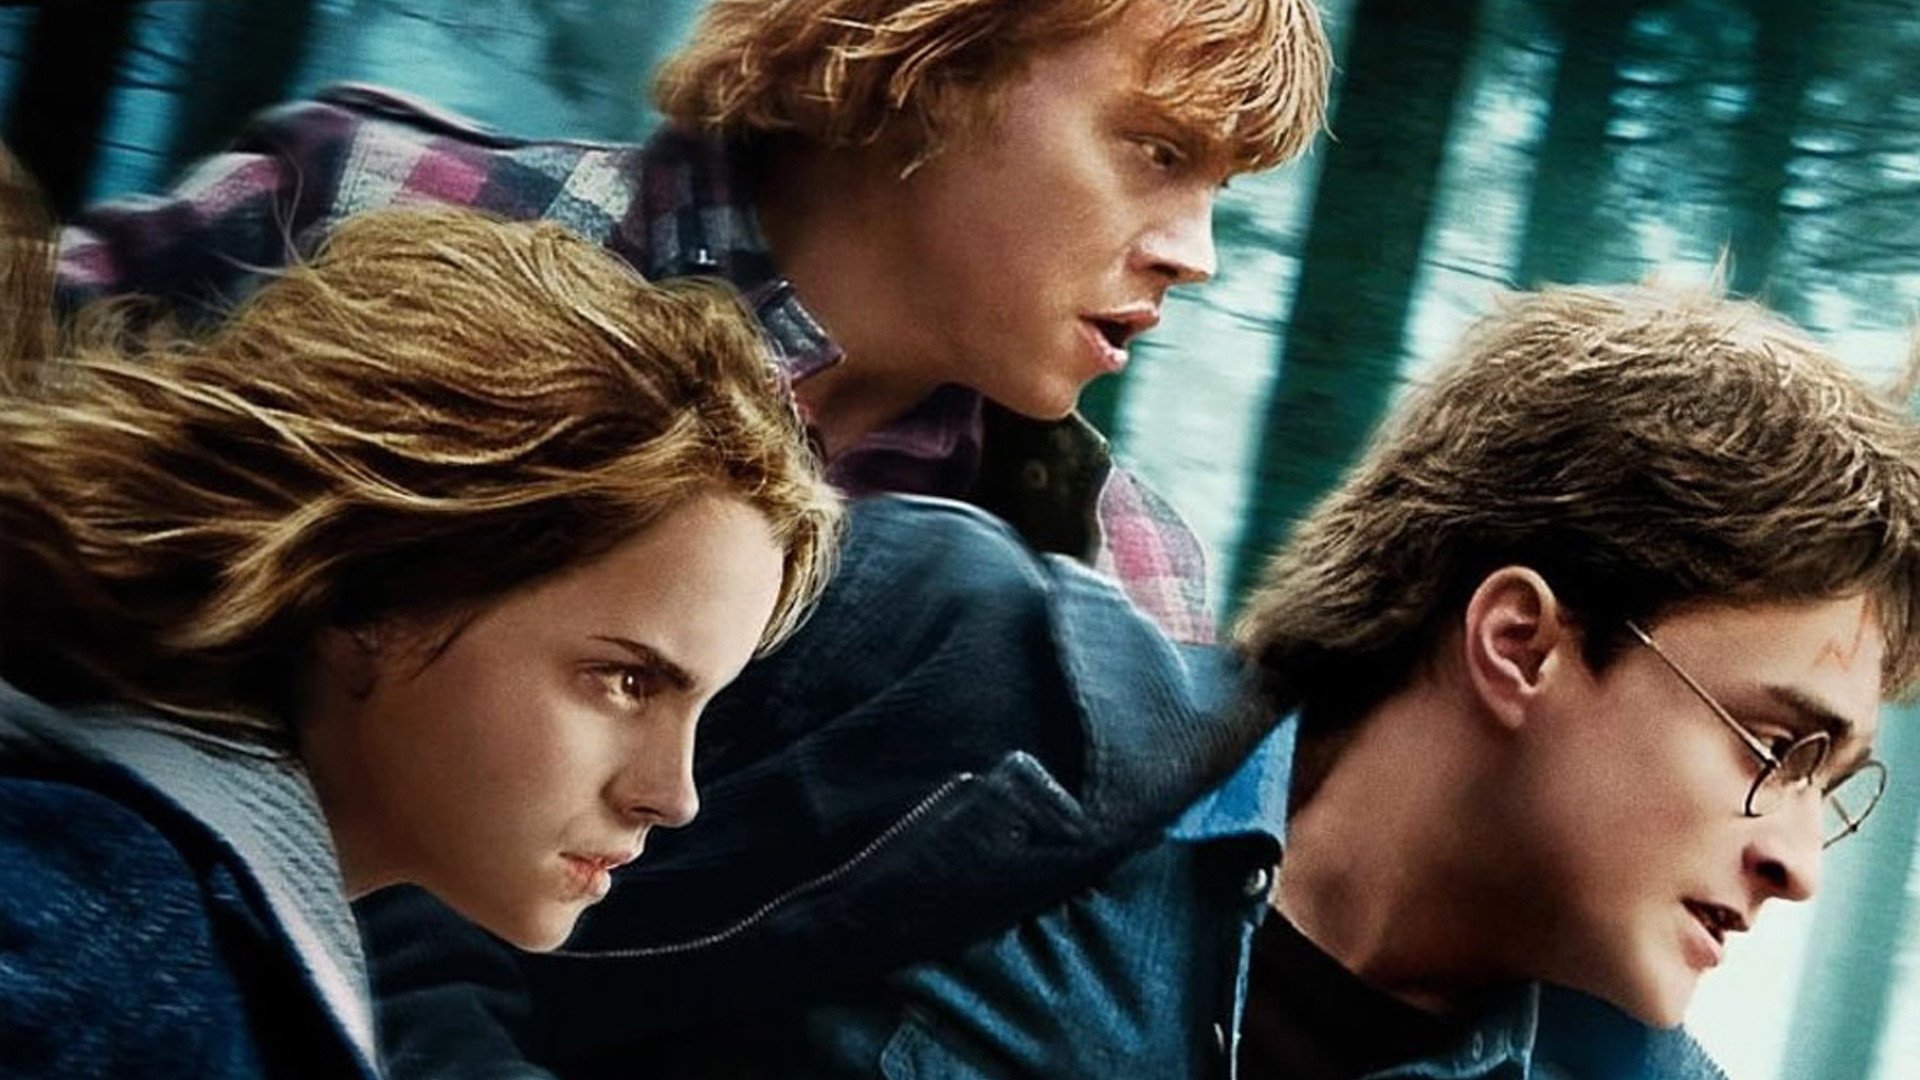 Ngắm nàng thơ của phim hành động xXx: Hermione Corfield trong bộ ảnh siêu  gợi cảm